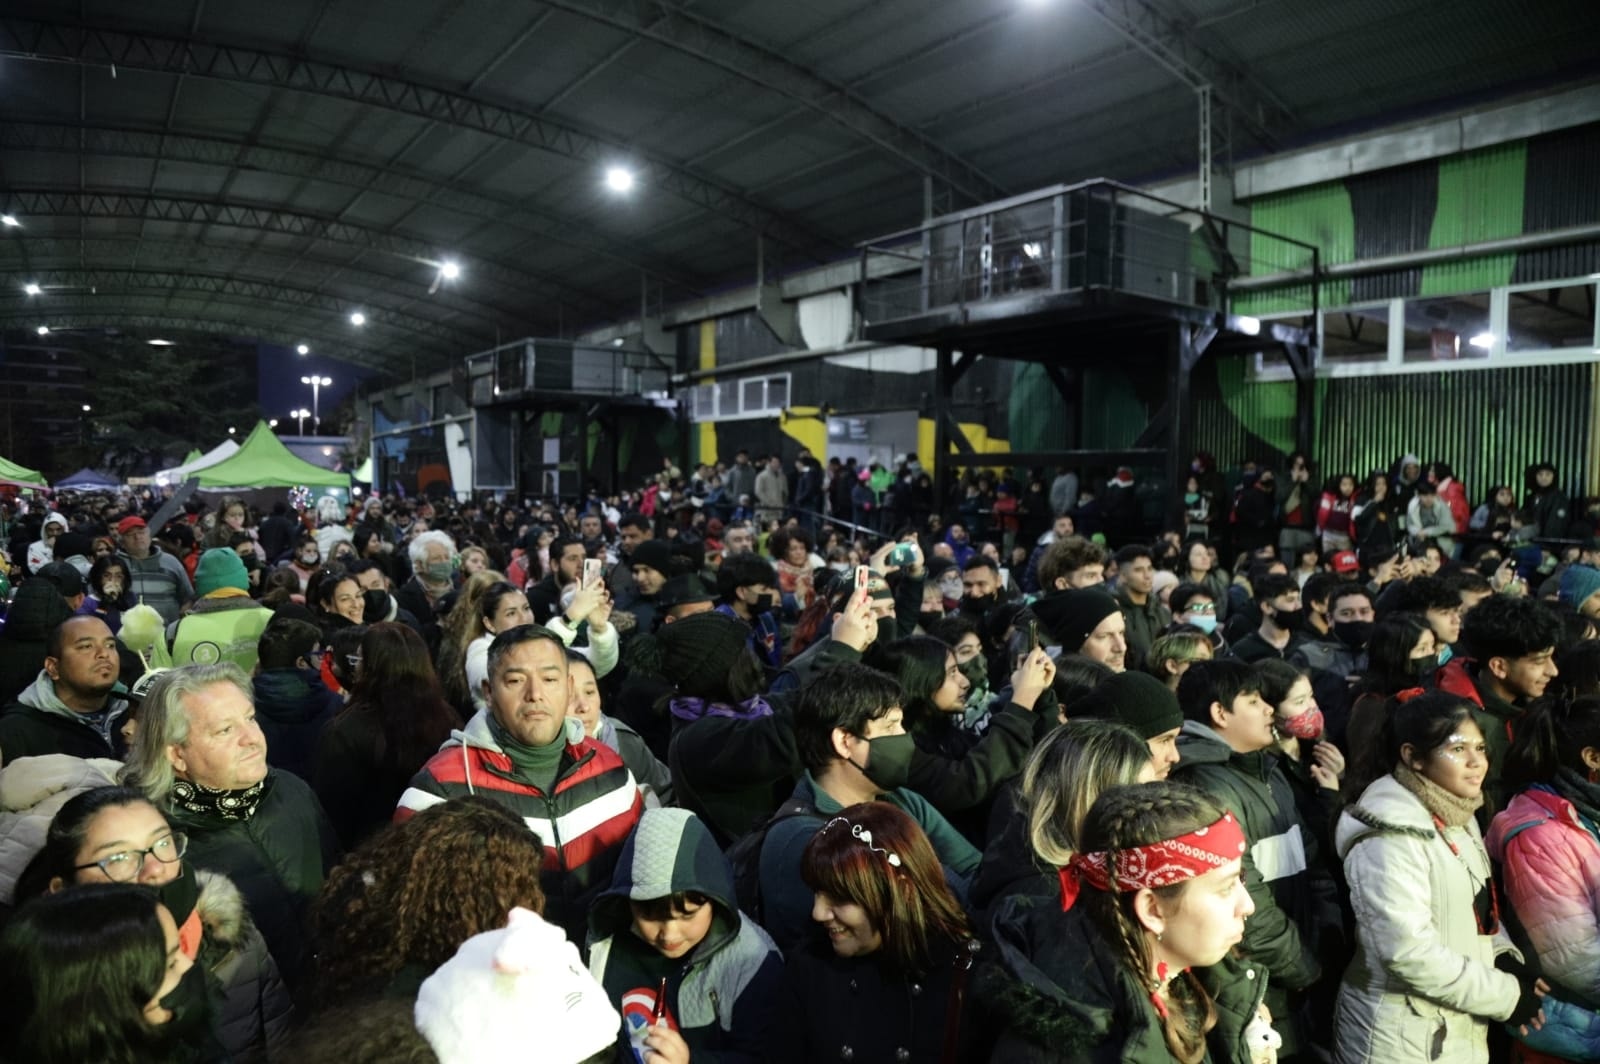 «Avellaneda Fantástica» convocó a una multitud en el Parque La Estación